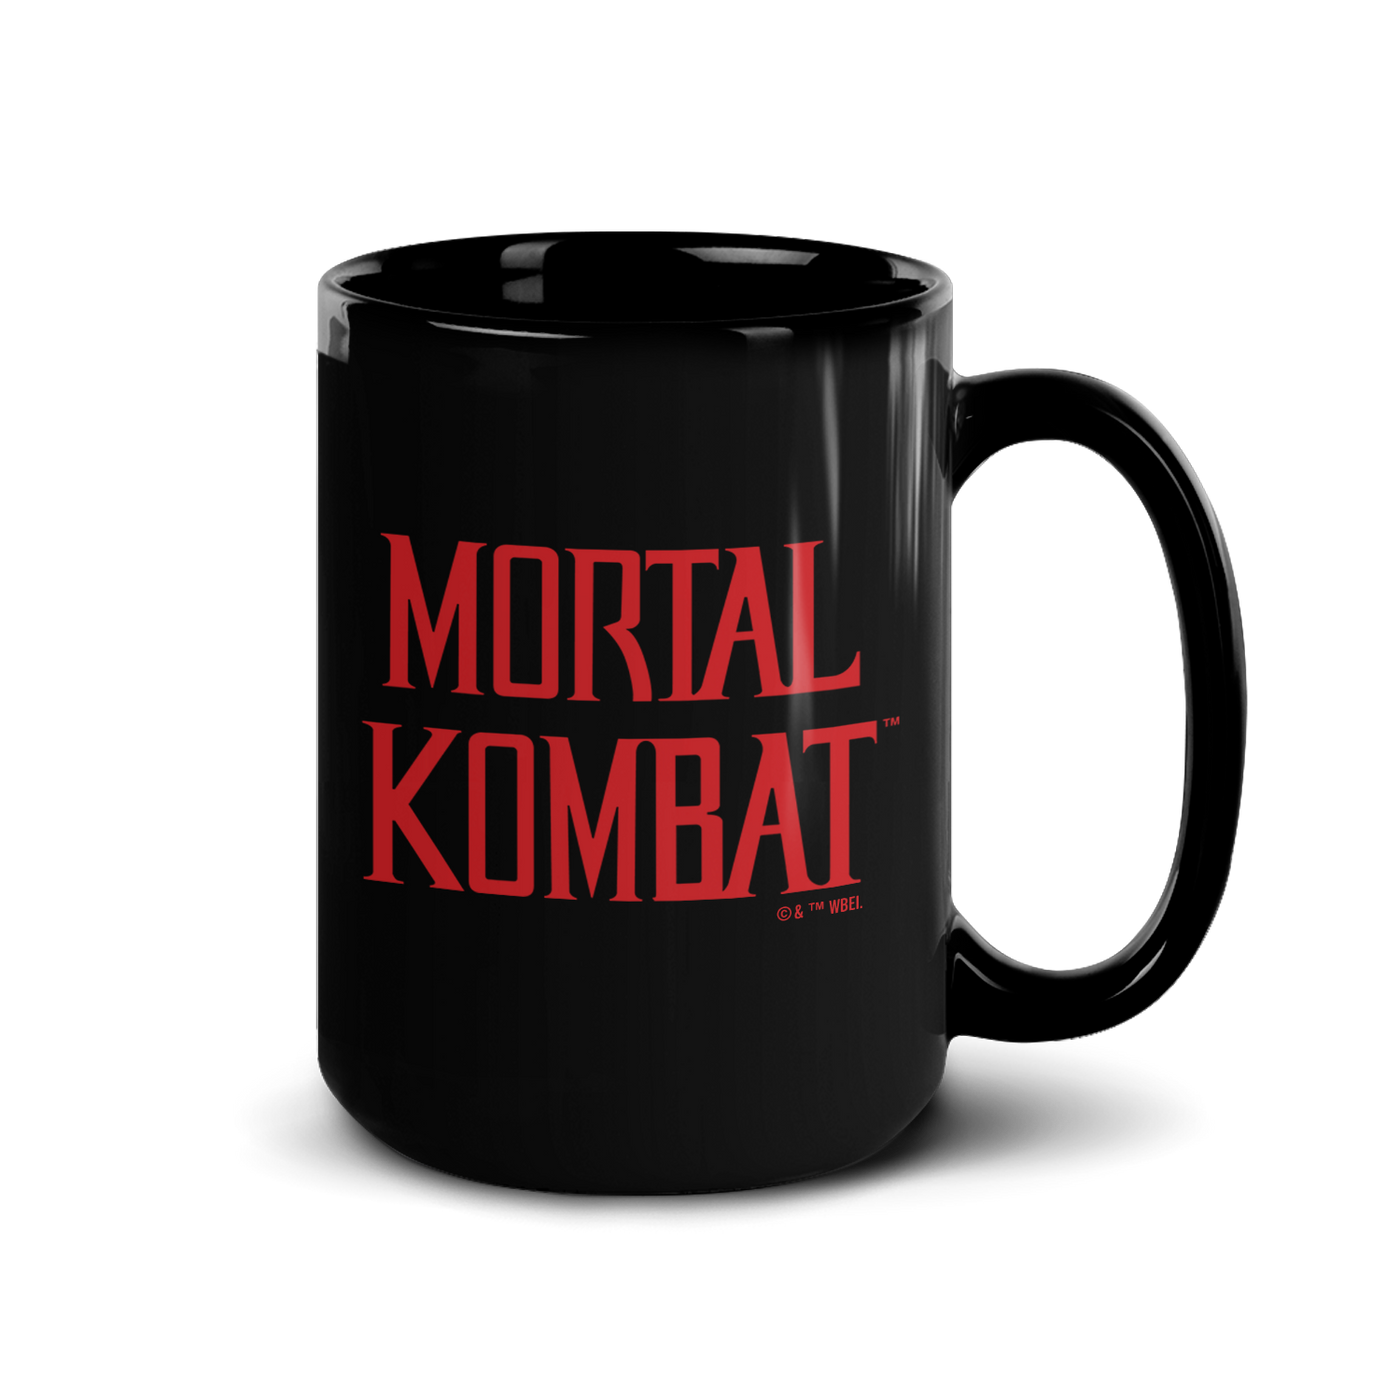 Mortal Kombat Finish Him Black Mug